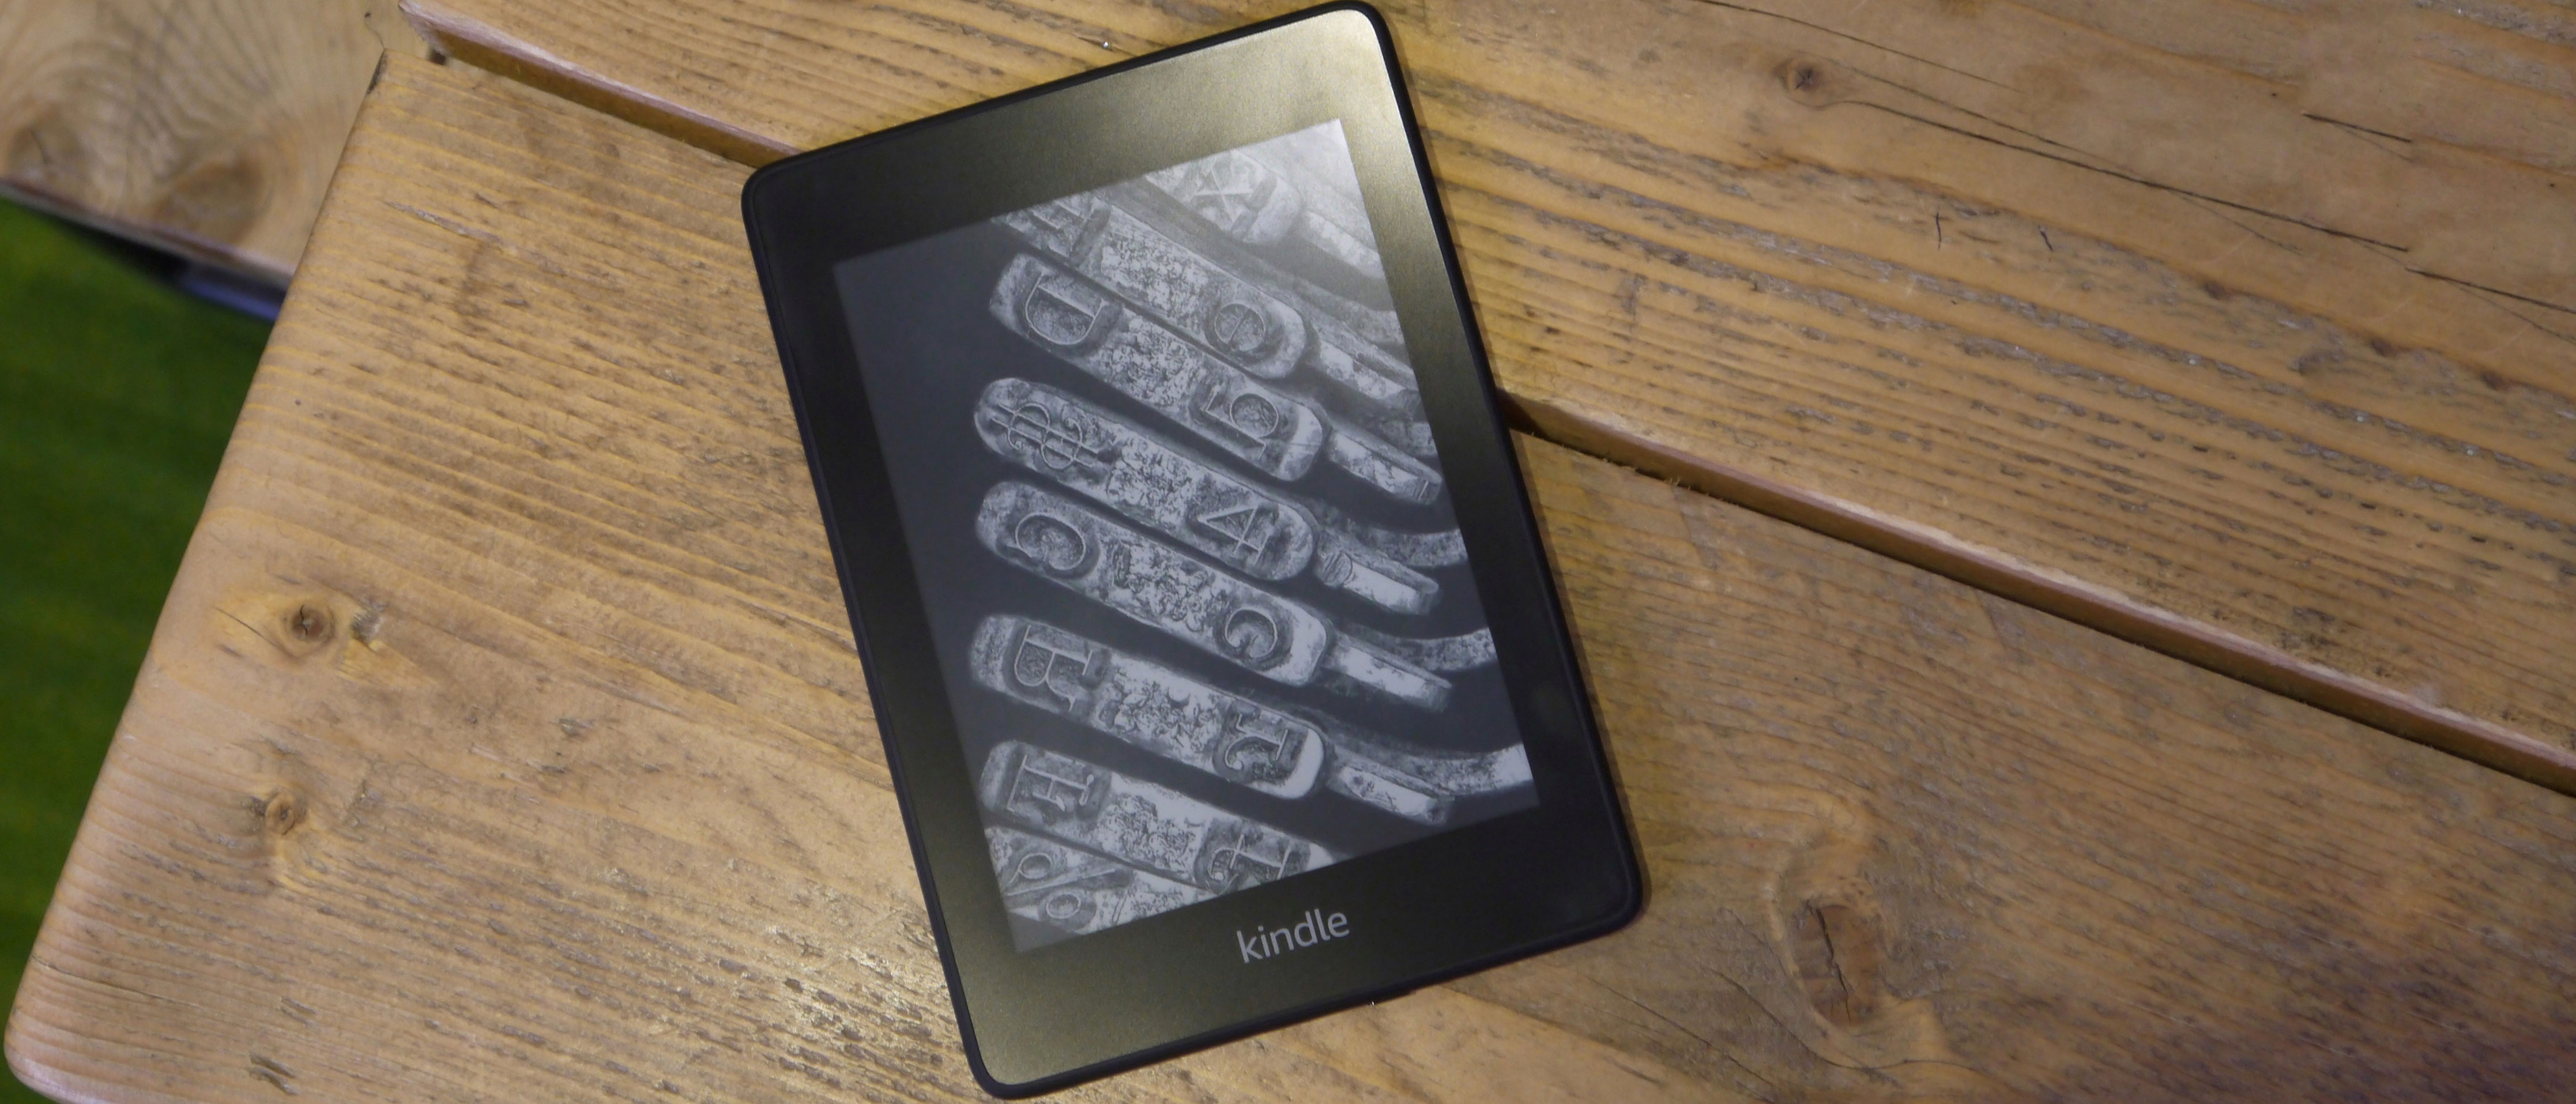 Thiết bị đọc sách điện tử của Amazon, Kindle Paperwhite không chỉ có thiết kế tinh tế mà còn được trang bị đèn nền, cho hiệu suất hiển thị tối ưu. Kindle Paperwhite là một trong những thiết bị đọc sách điện tử tốt nhất trên thị trường. Nhấn vào ảnh để khám phá thêm về Kindle Paperwhite.